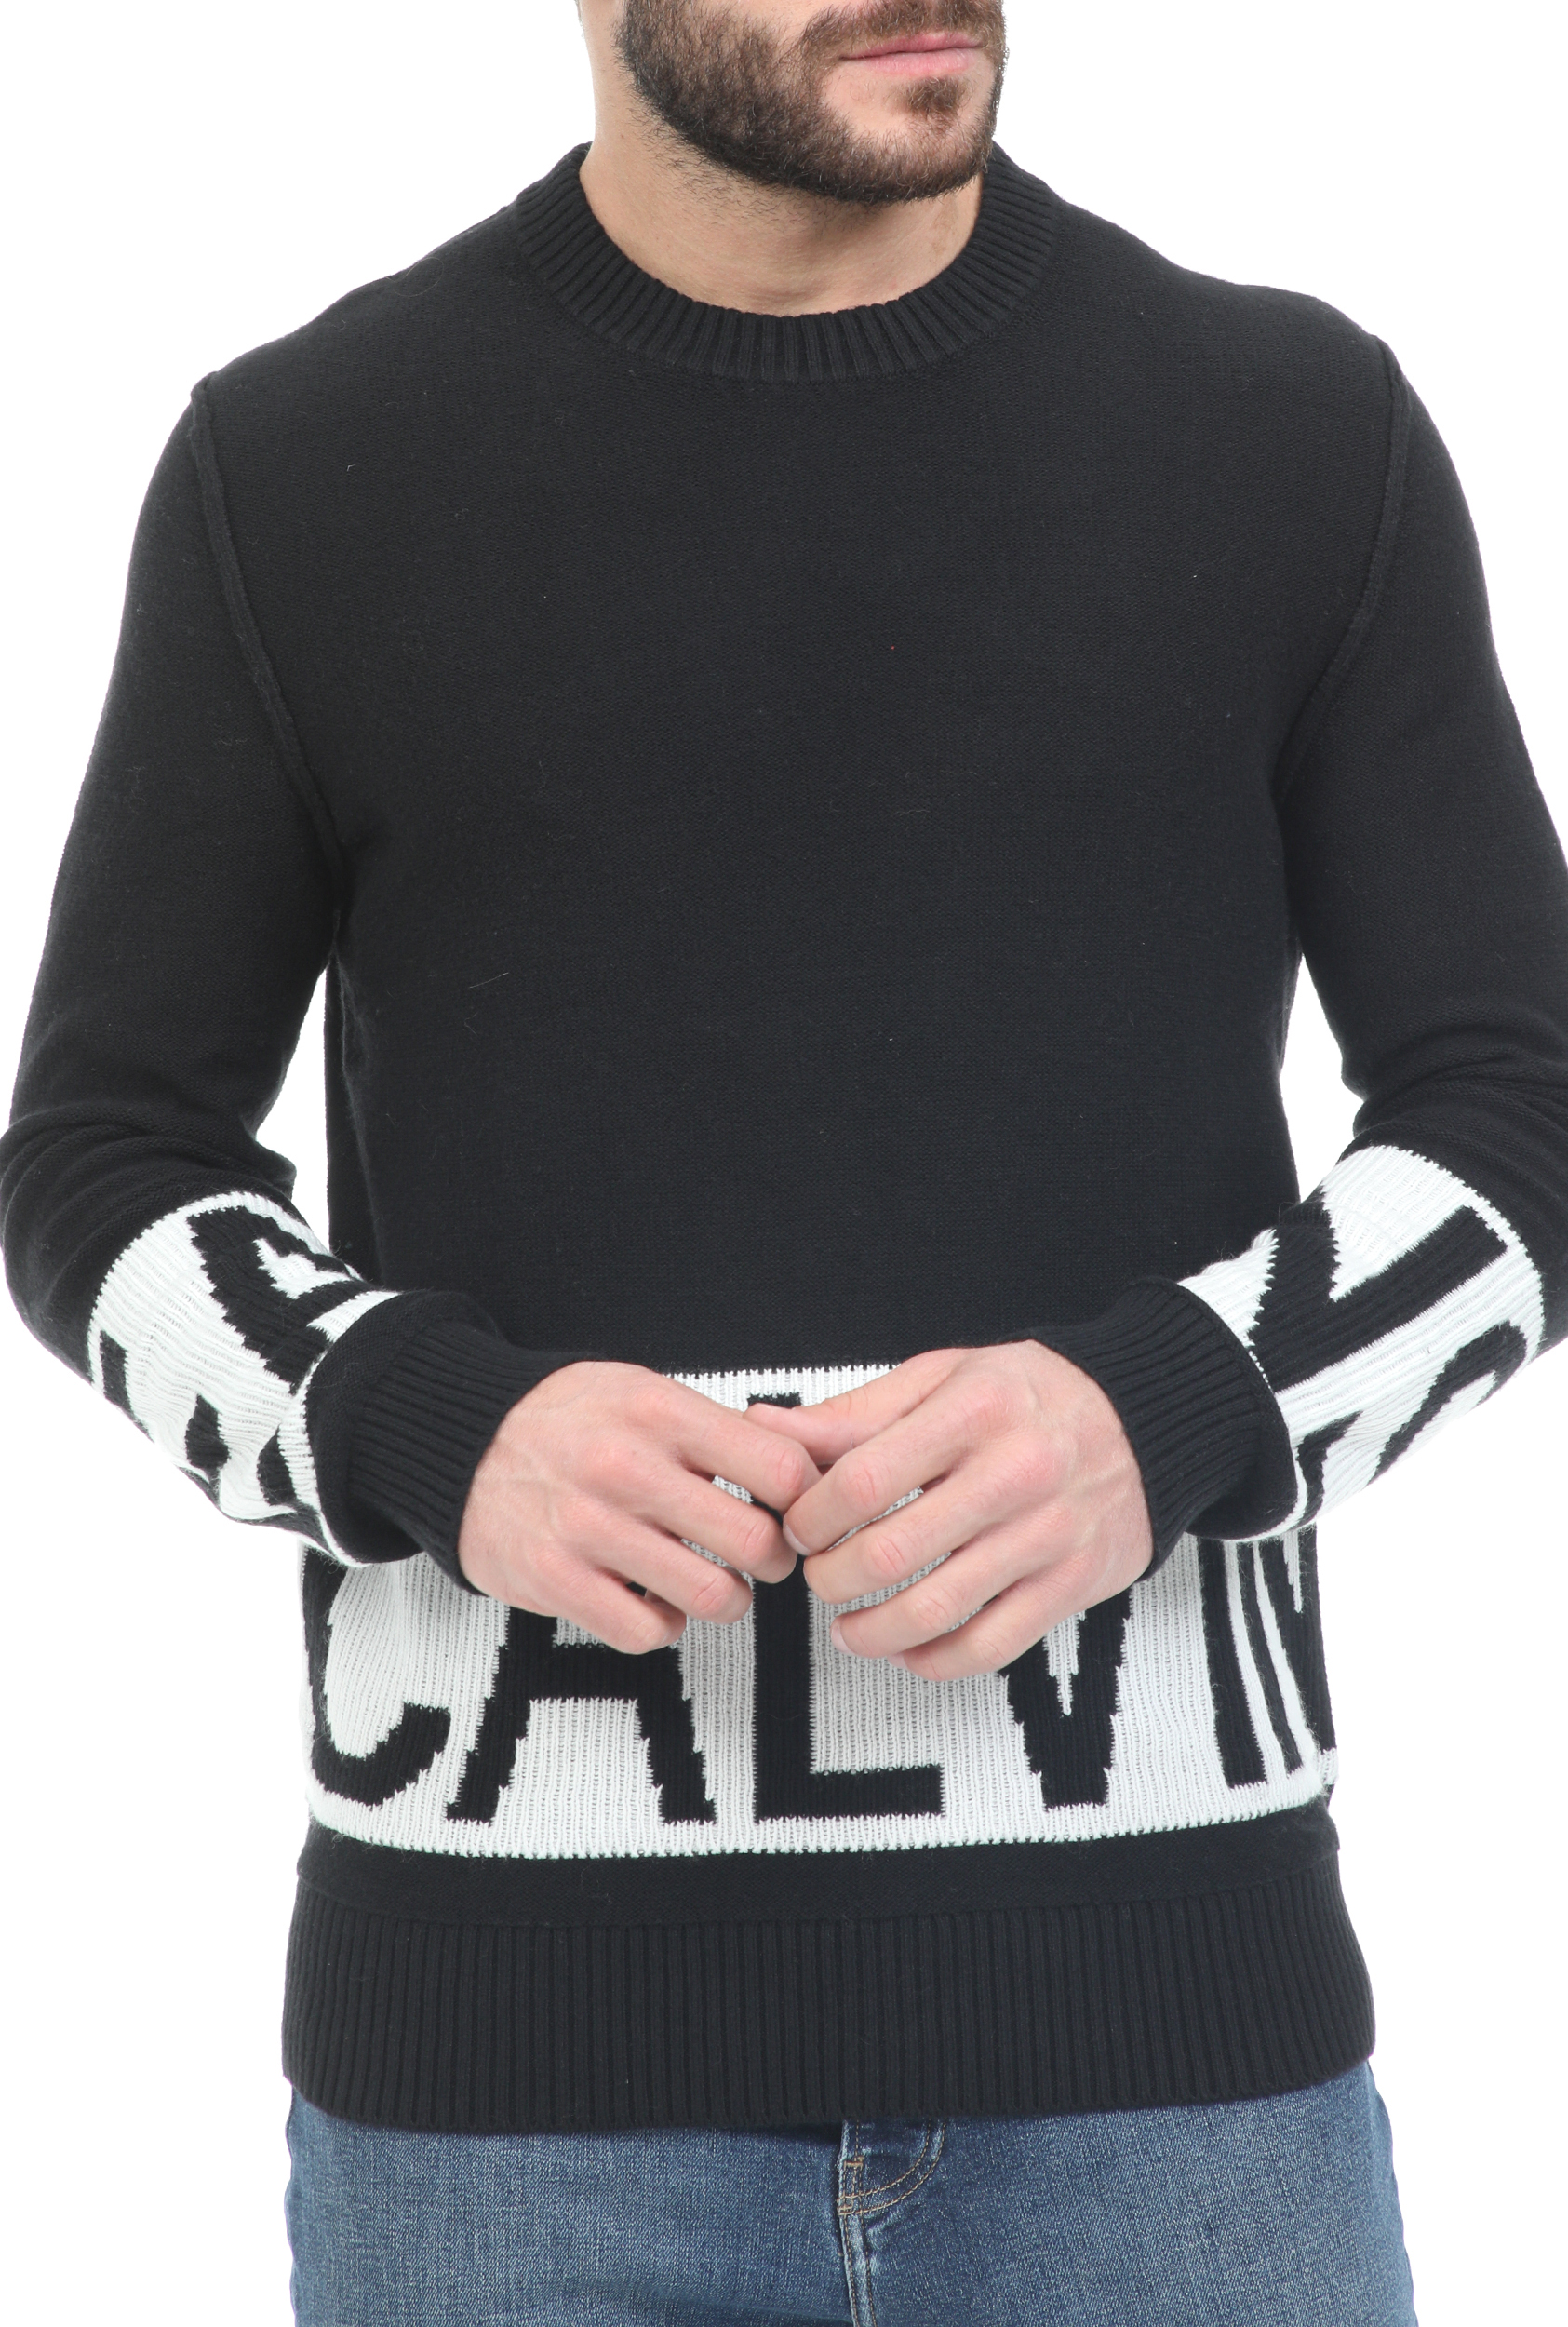 Ανδρικά/Ρούχα/Πλεκτά-Ζακέτες/Πουλόβερ CALVIN KLEIN JEANS - Ανδρικό πουλόβερ CALVIN KLEIN JEANS BLOCKING LOGO μαύρο λευκό